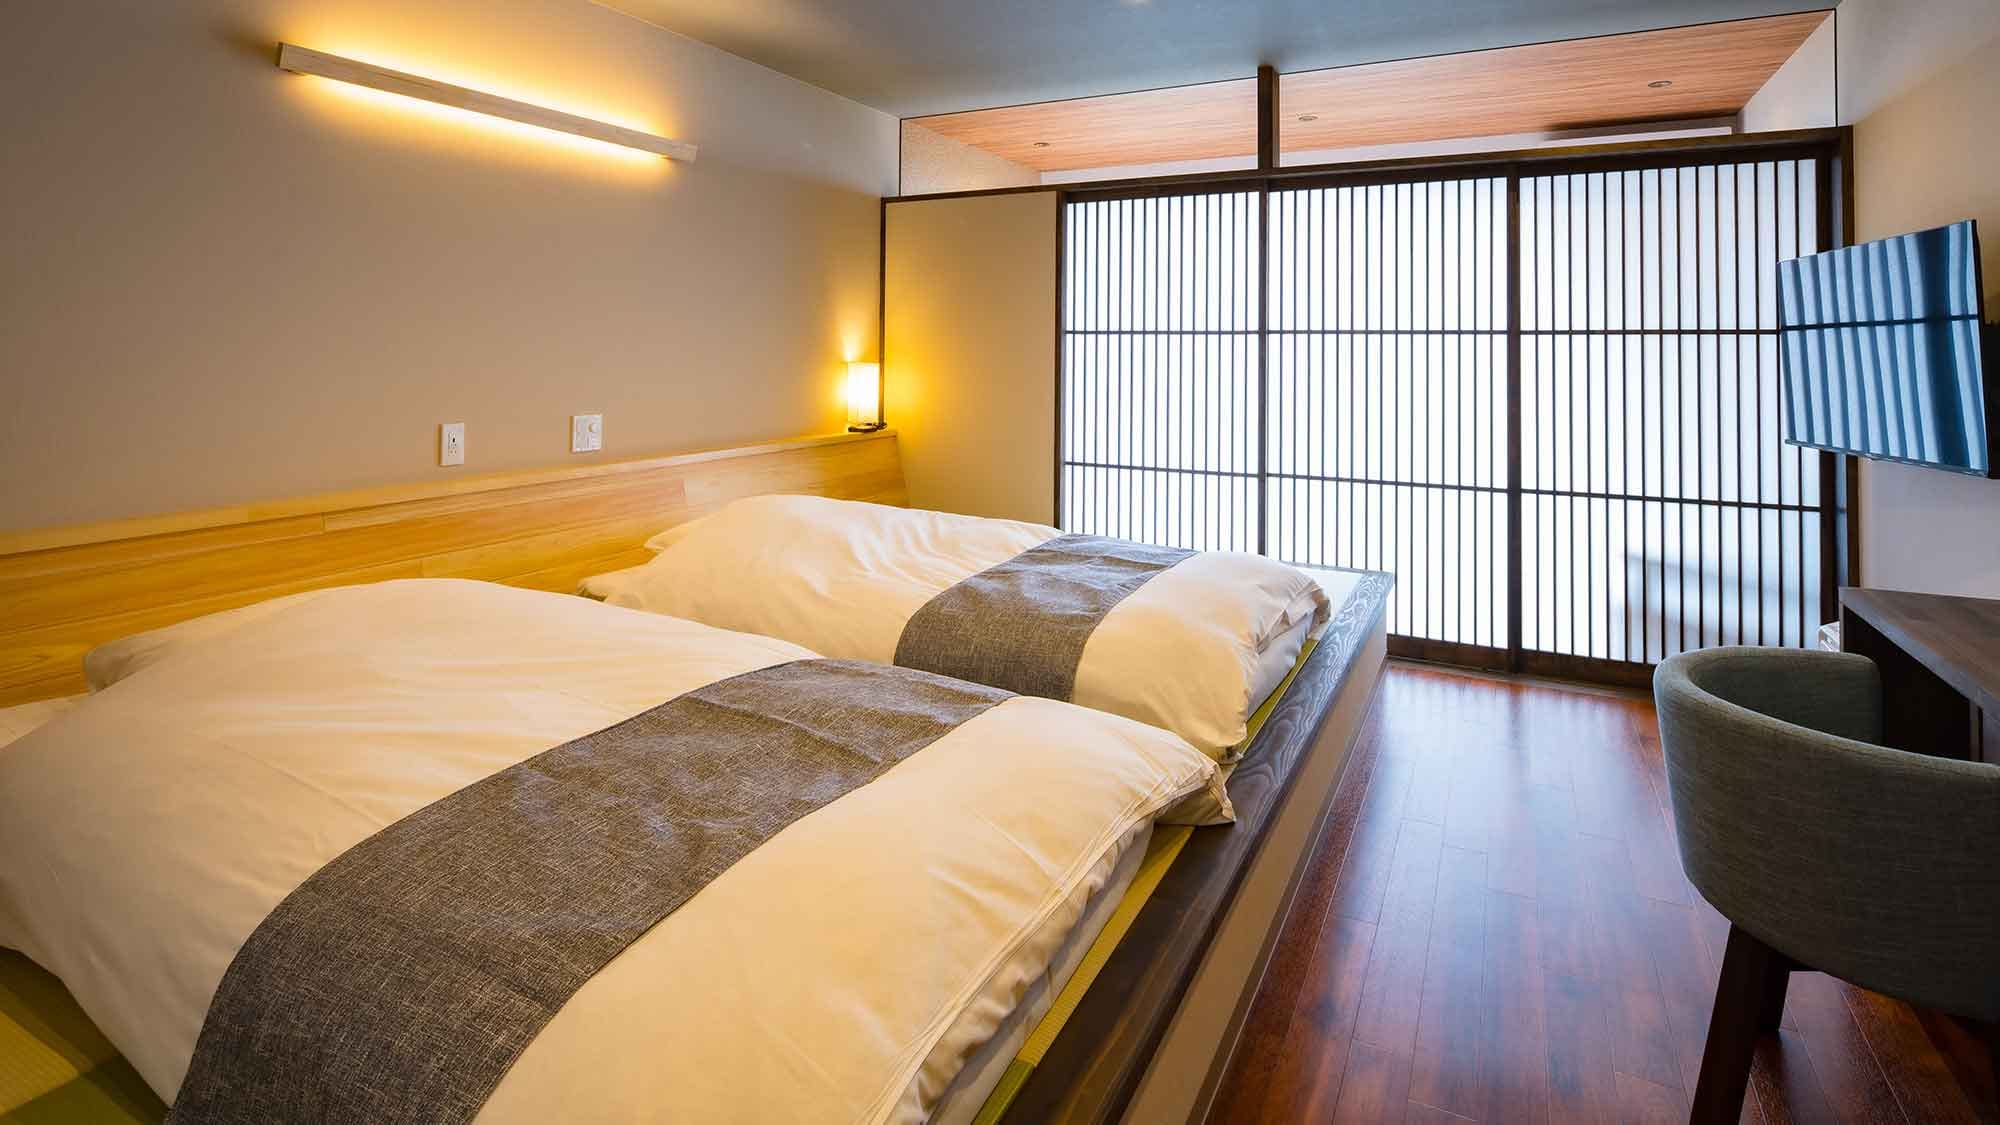 ・[ตัวอย่างห้องสไตล์ญี่ปุ่น-ตะวันตกที่หันหน้าไปทางทะเล] มีฟูกนอนในพื้นที่ปูเสื่อทาทามิแบบริวกิว